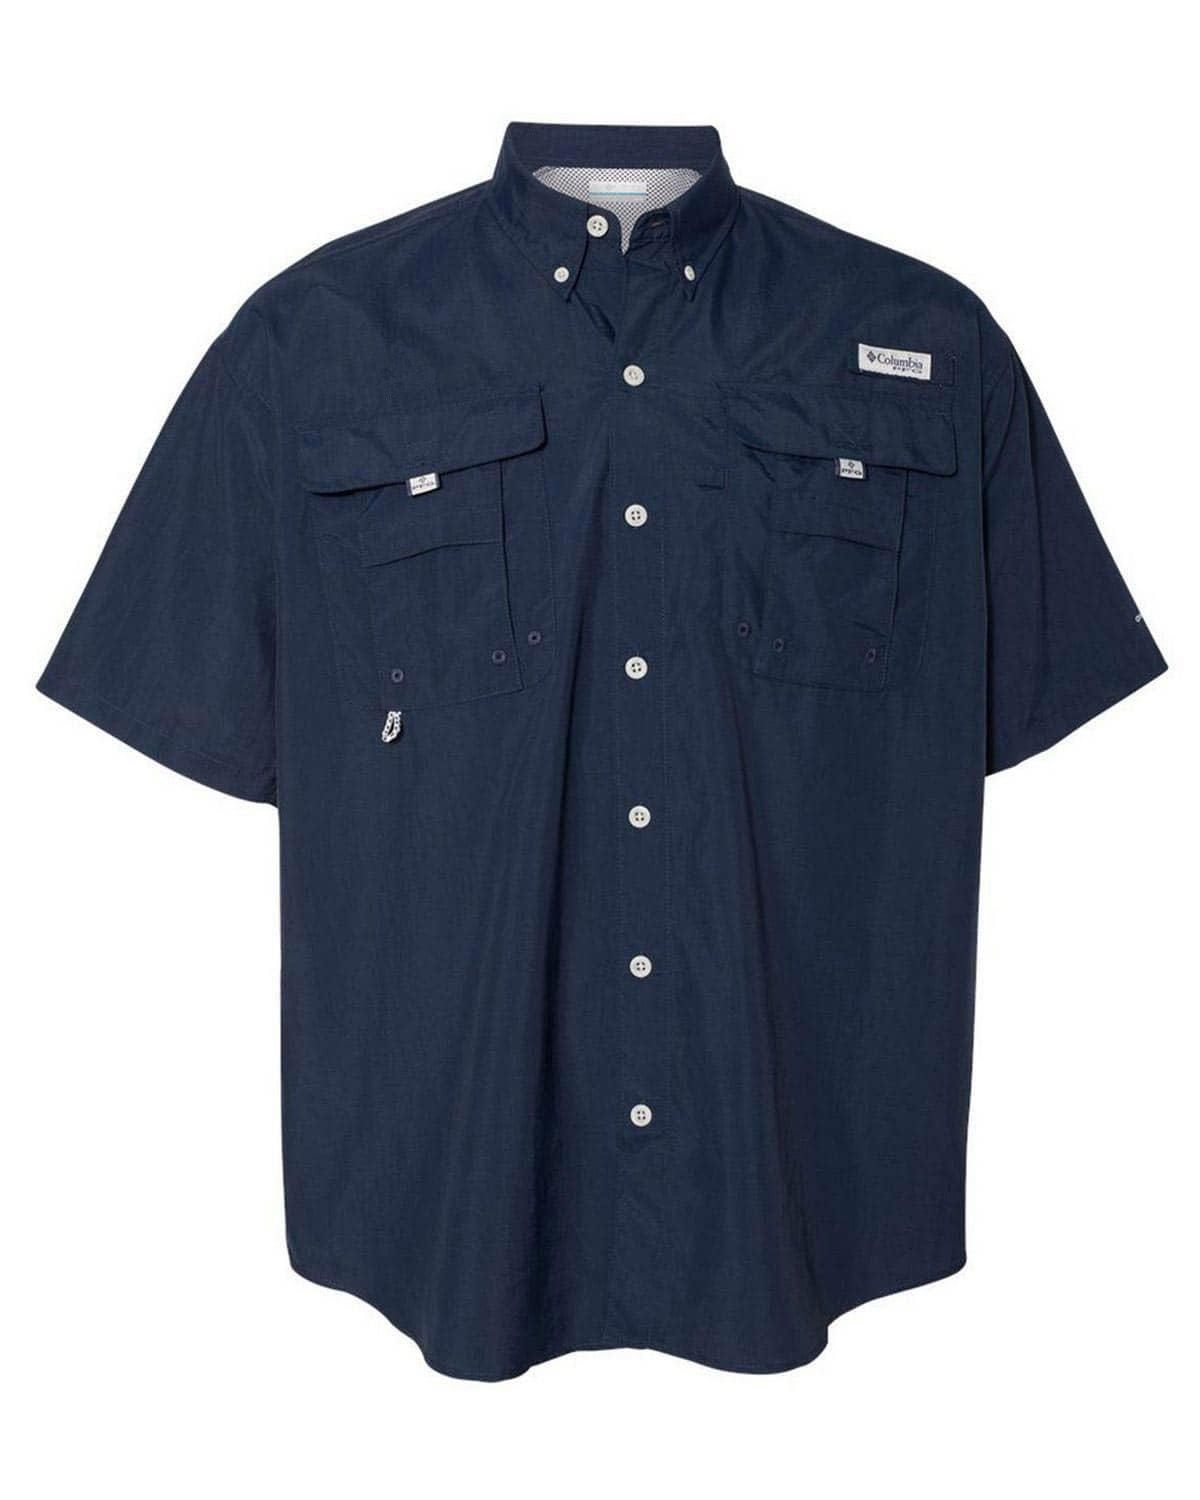 Columbia 101165 Bahama II Short Sleeve Shirt